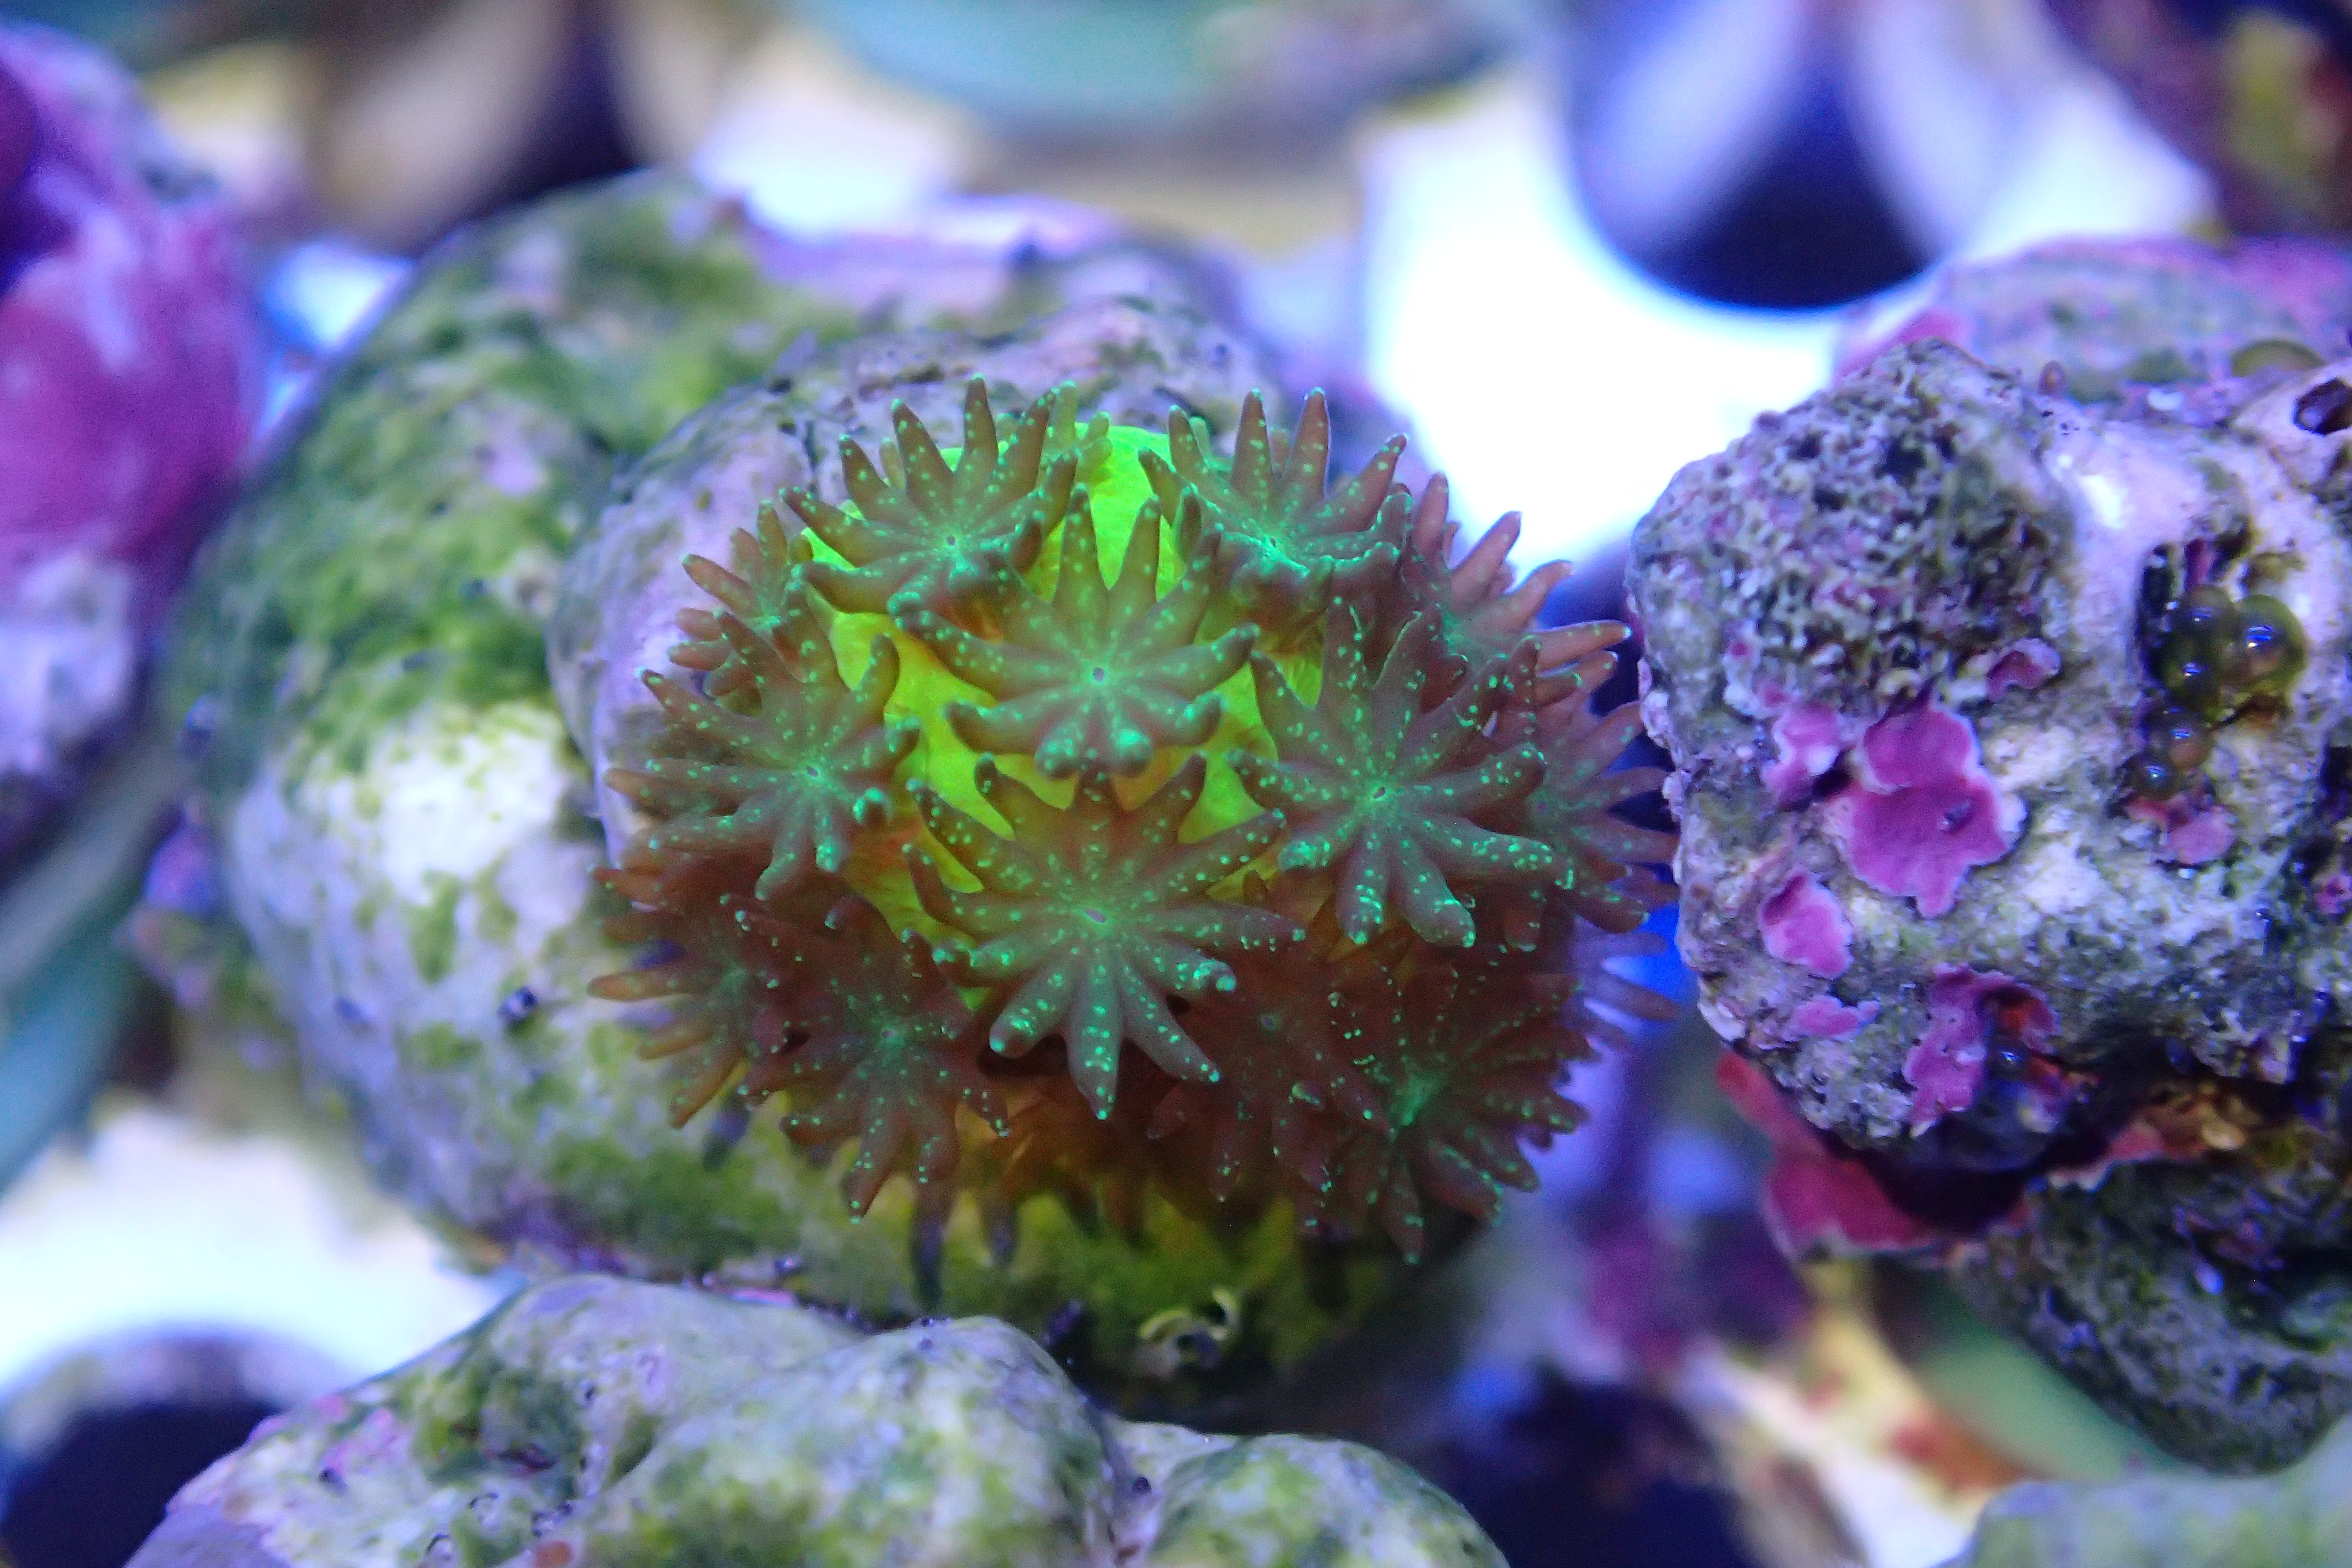 Das Bild zeigt eine Steinkoralle (Acropora millepora). Sie ist grünlich gefärbt. Auf ihrer Oberfläche befinden sich zahlreiche kleine Einzelpolypen, ebenfalls grünlich gefärbt.